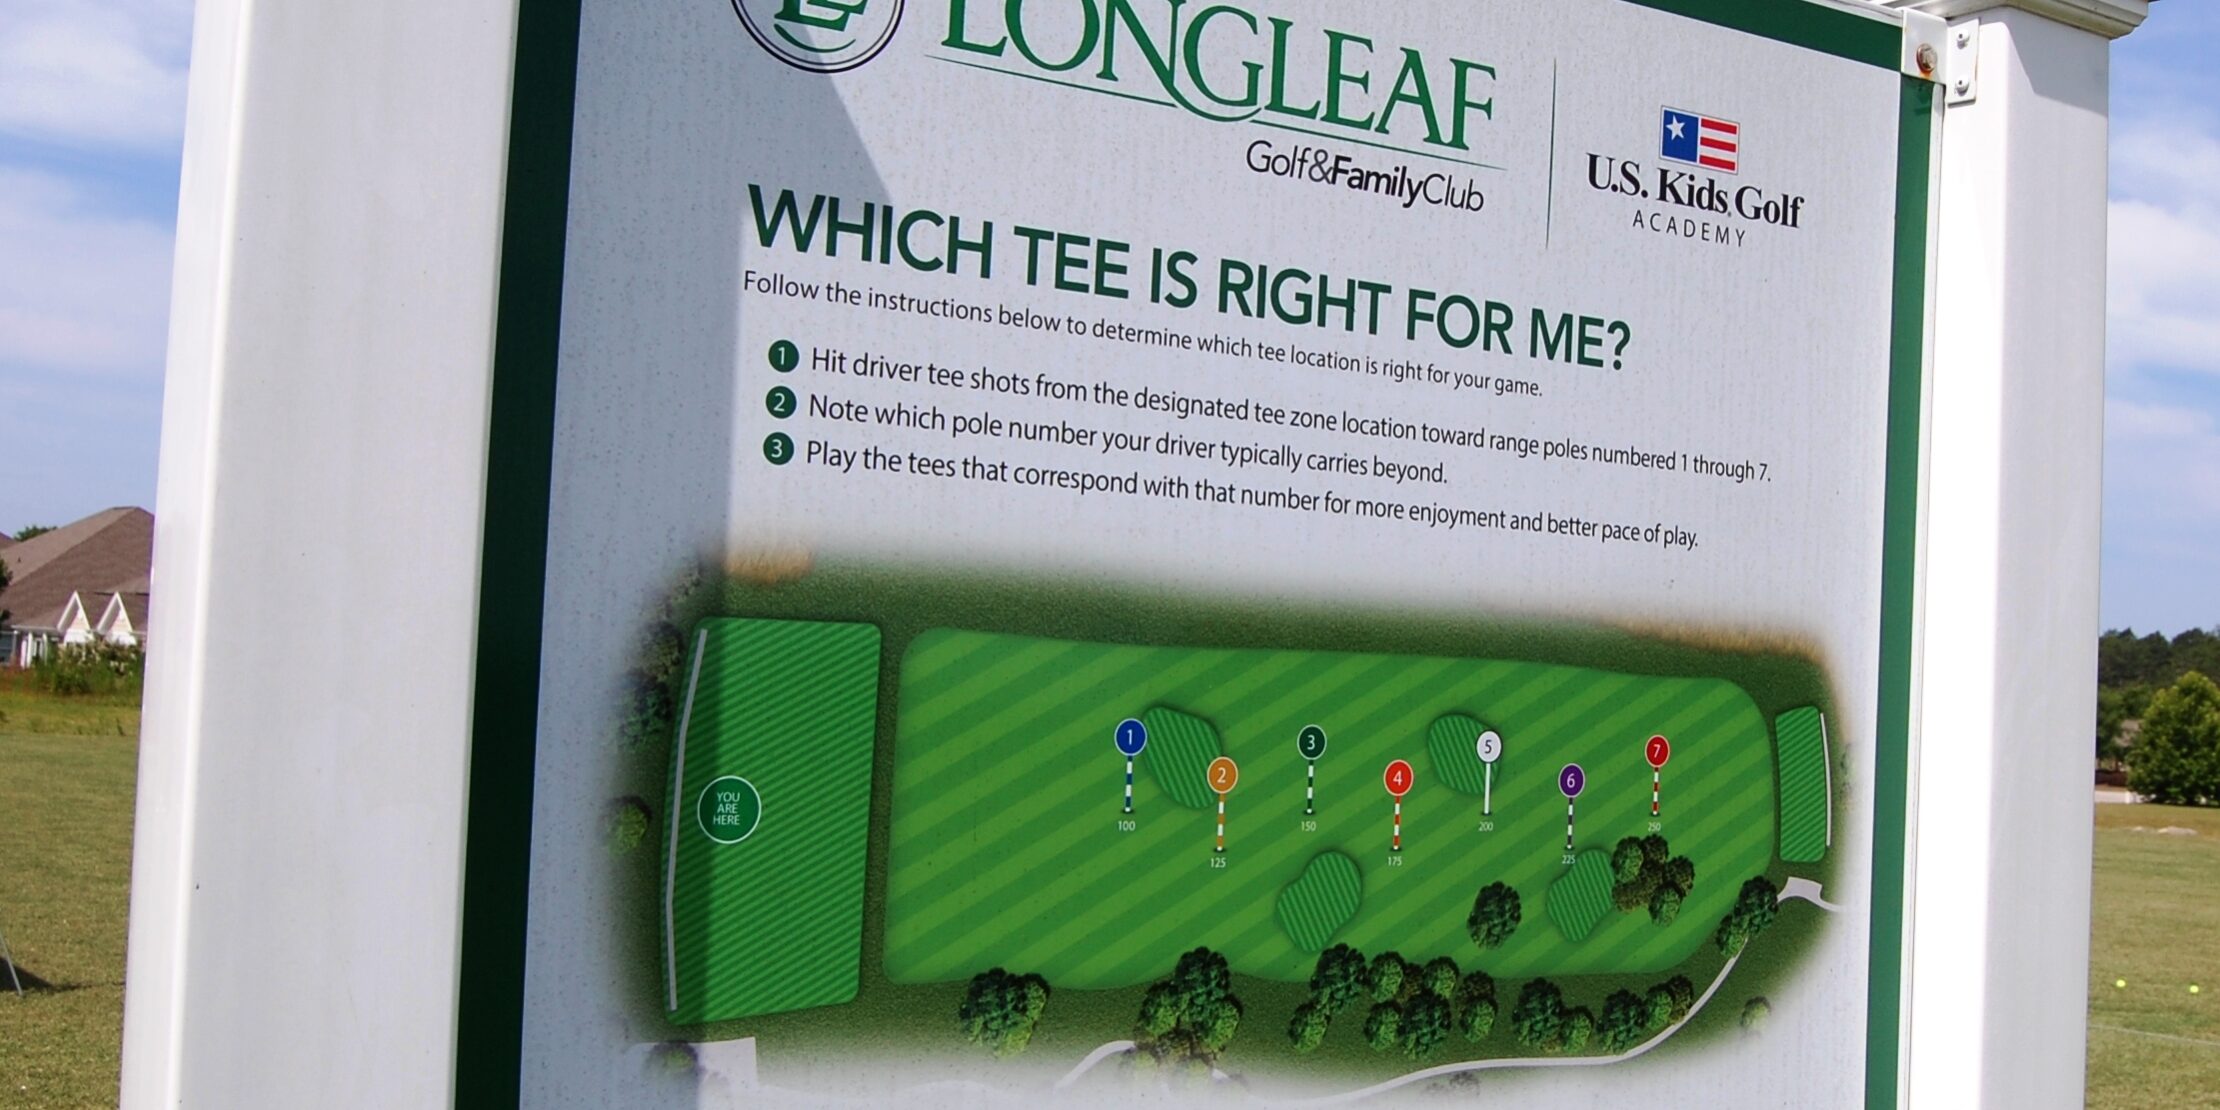 Longleaf: On the – track right Golf Triad